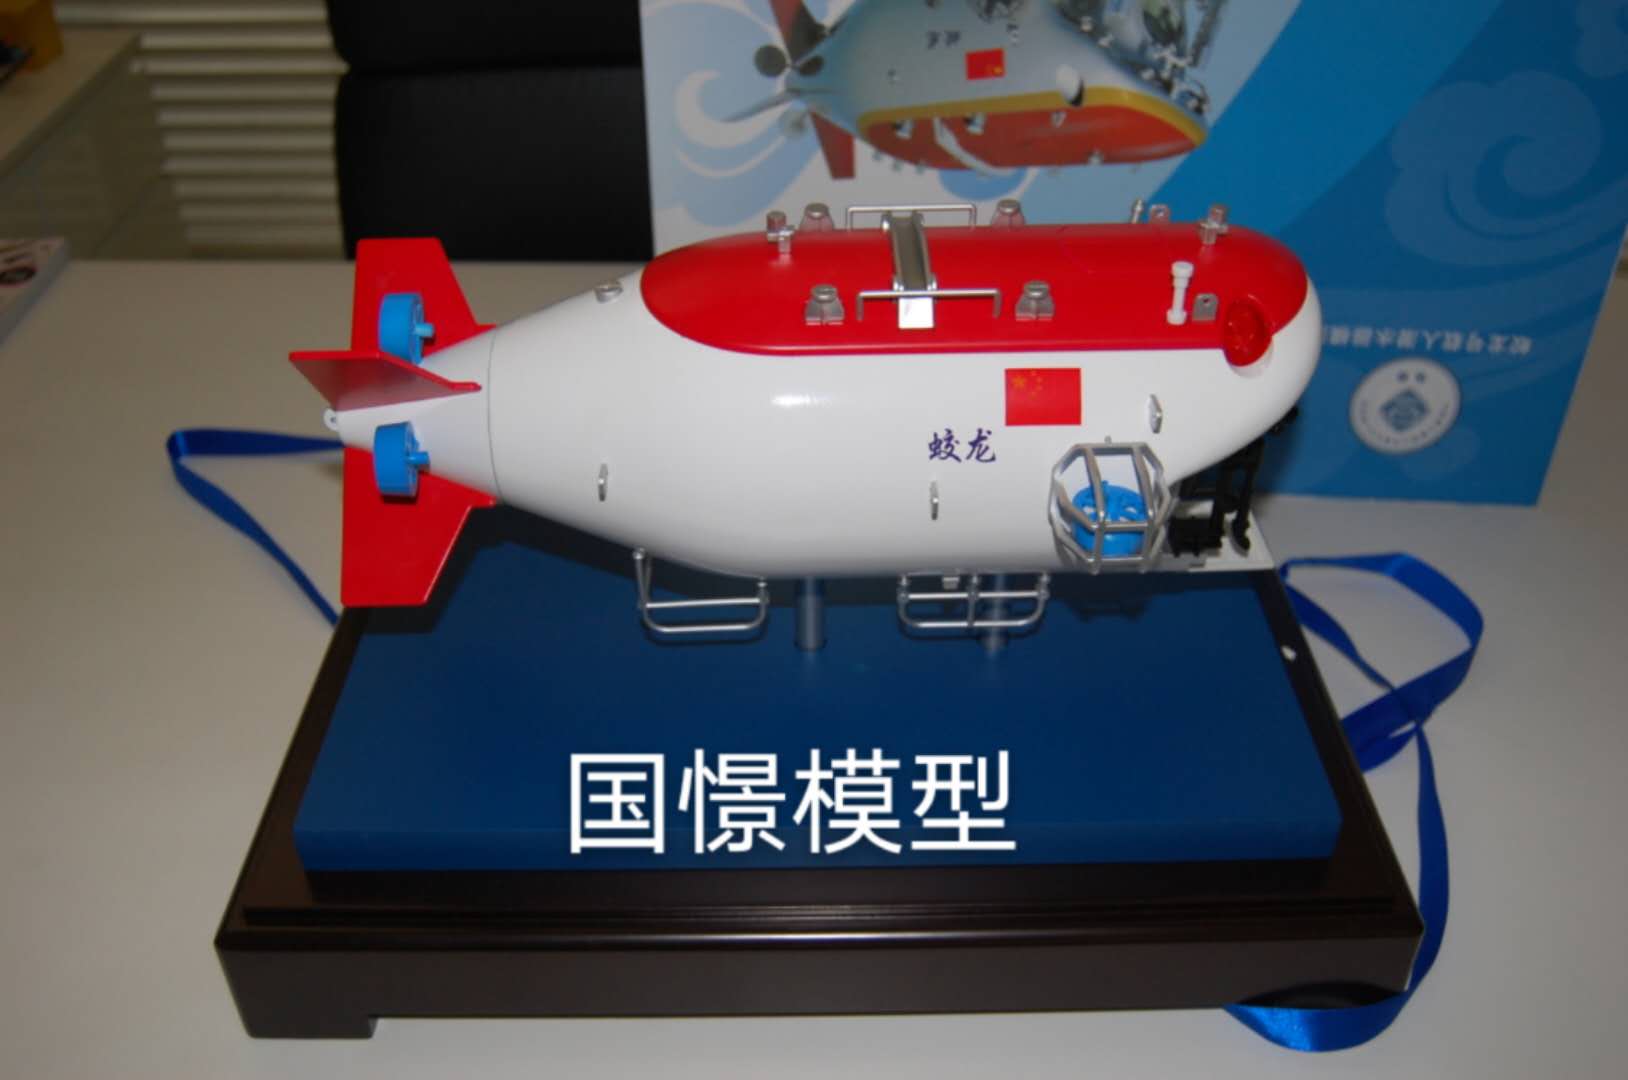 尚义县船舶模型